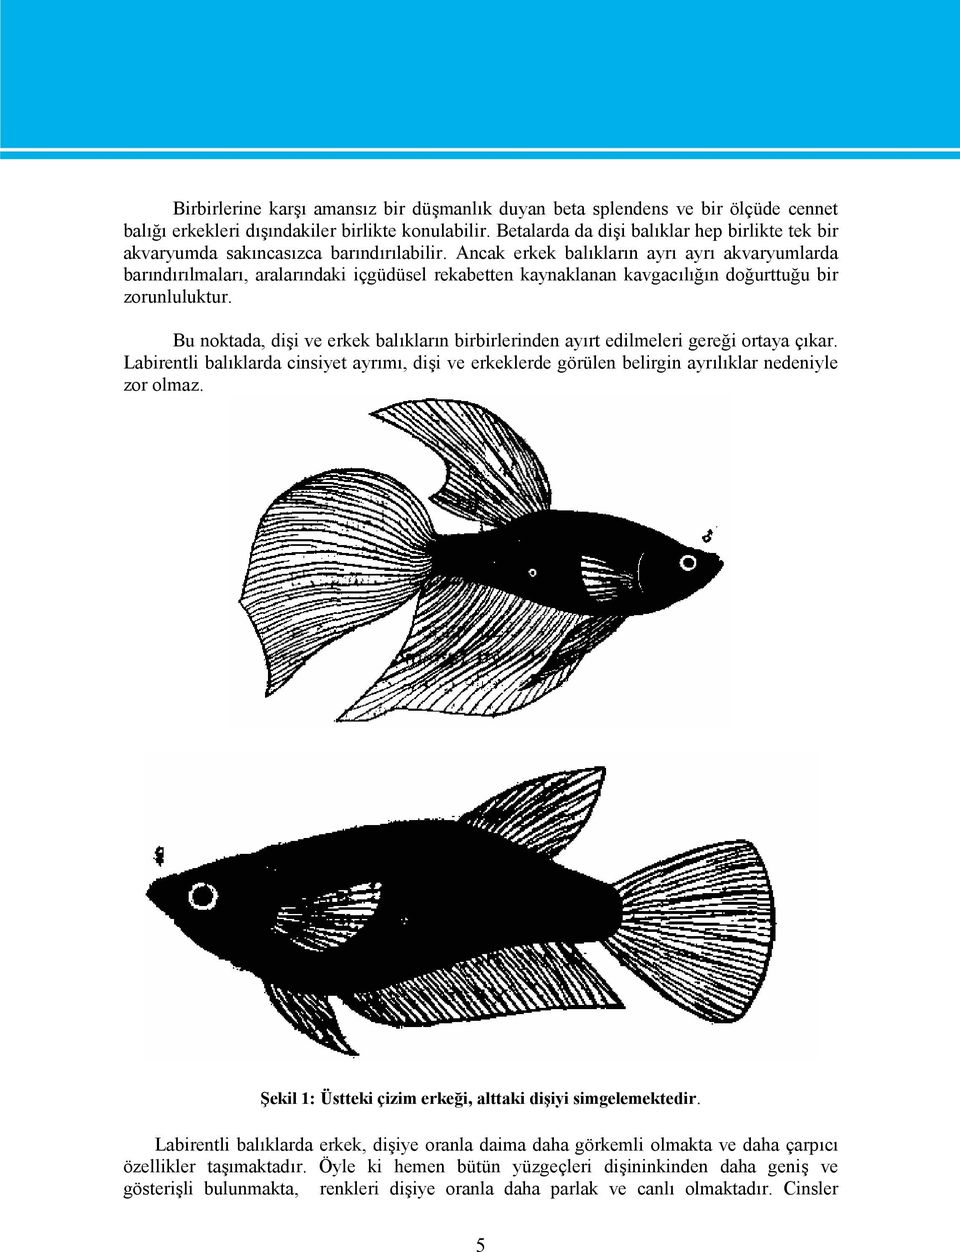 Ancak erkek balıkların ayrı ayrı akvaryumlarda barındırılmaları, aralarındaki içgüdüsel rekabetten kaynaklanan kavgacılığın doğurttuğu bir zorunluluktur.